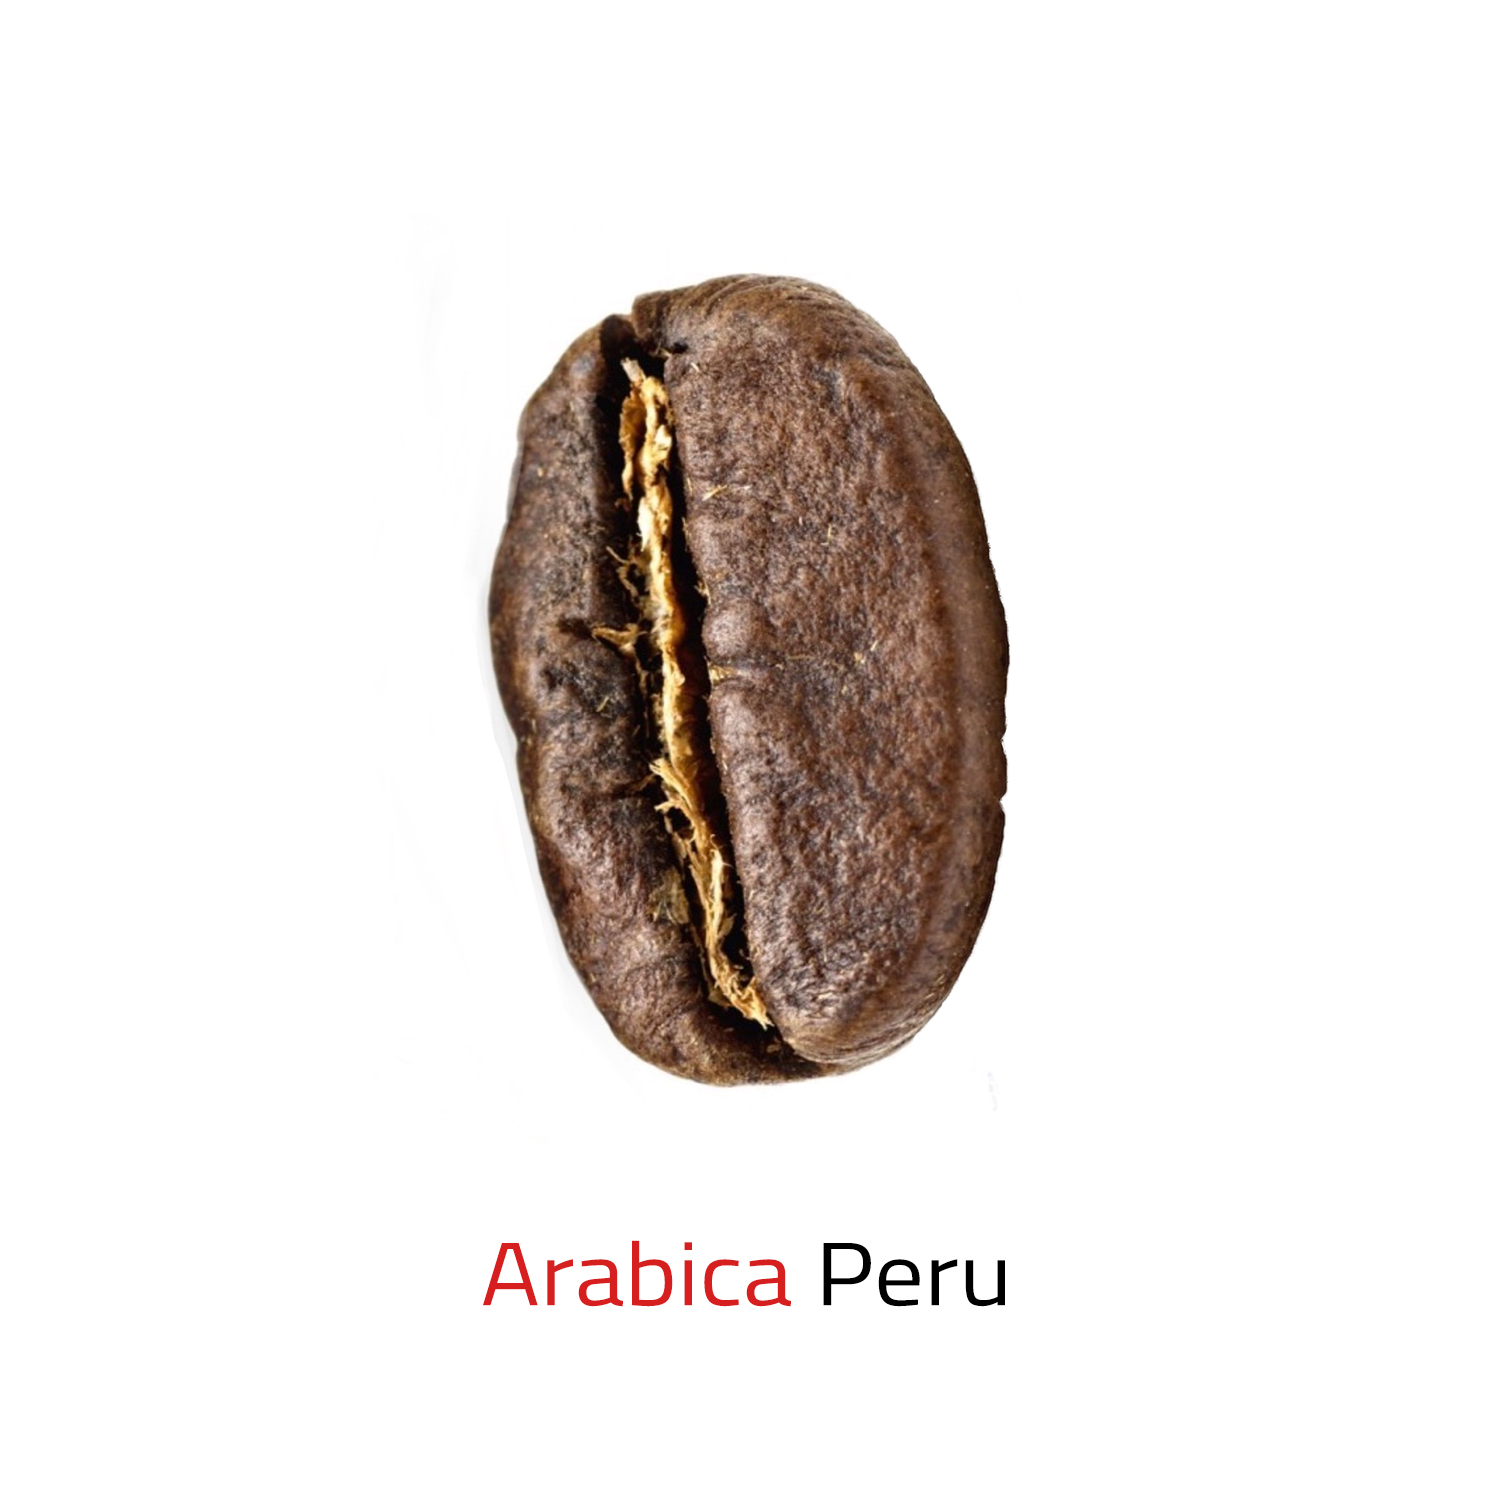 Čerstvě pražená káva zrnková Arabica Peru